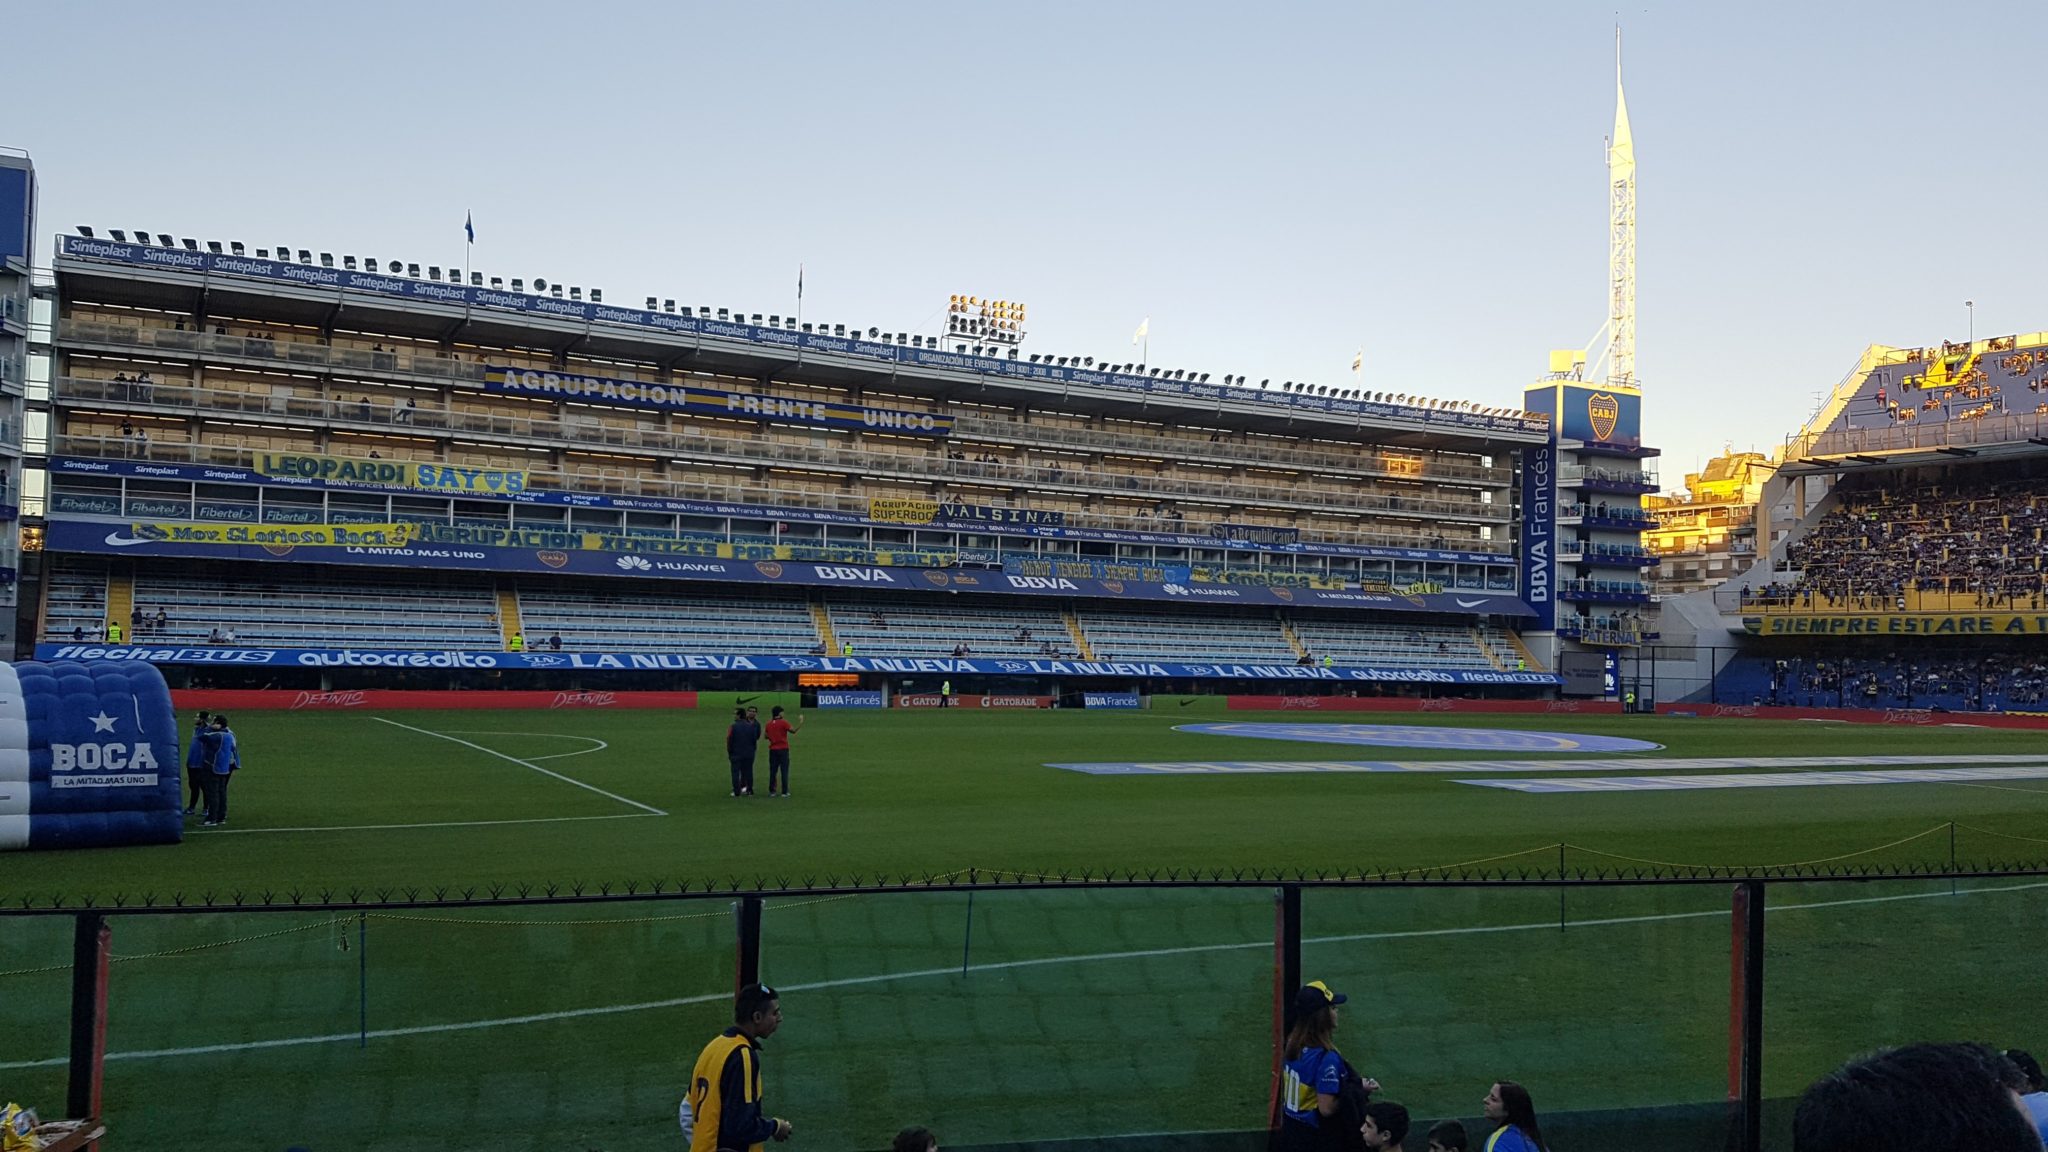 Boca Juniors - La Bombonera